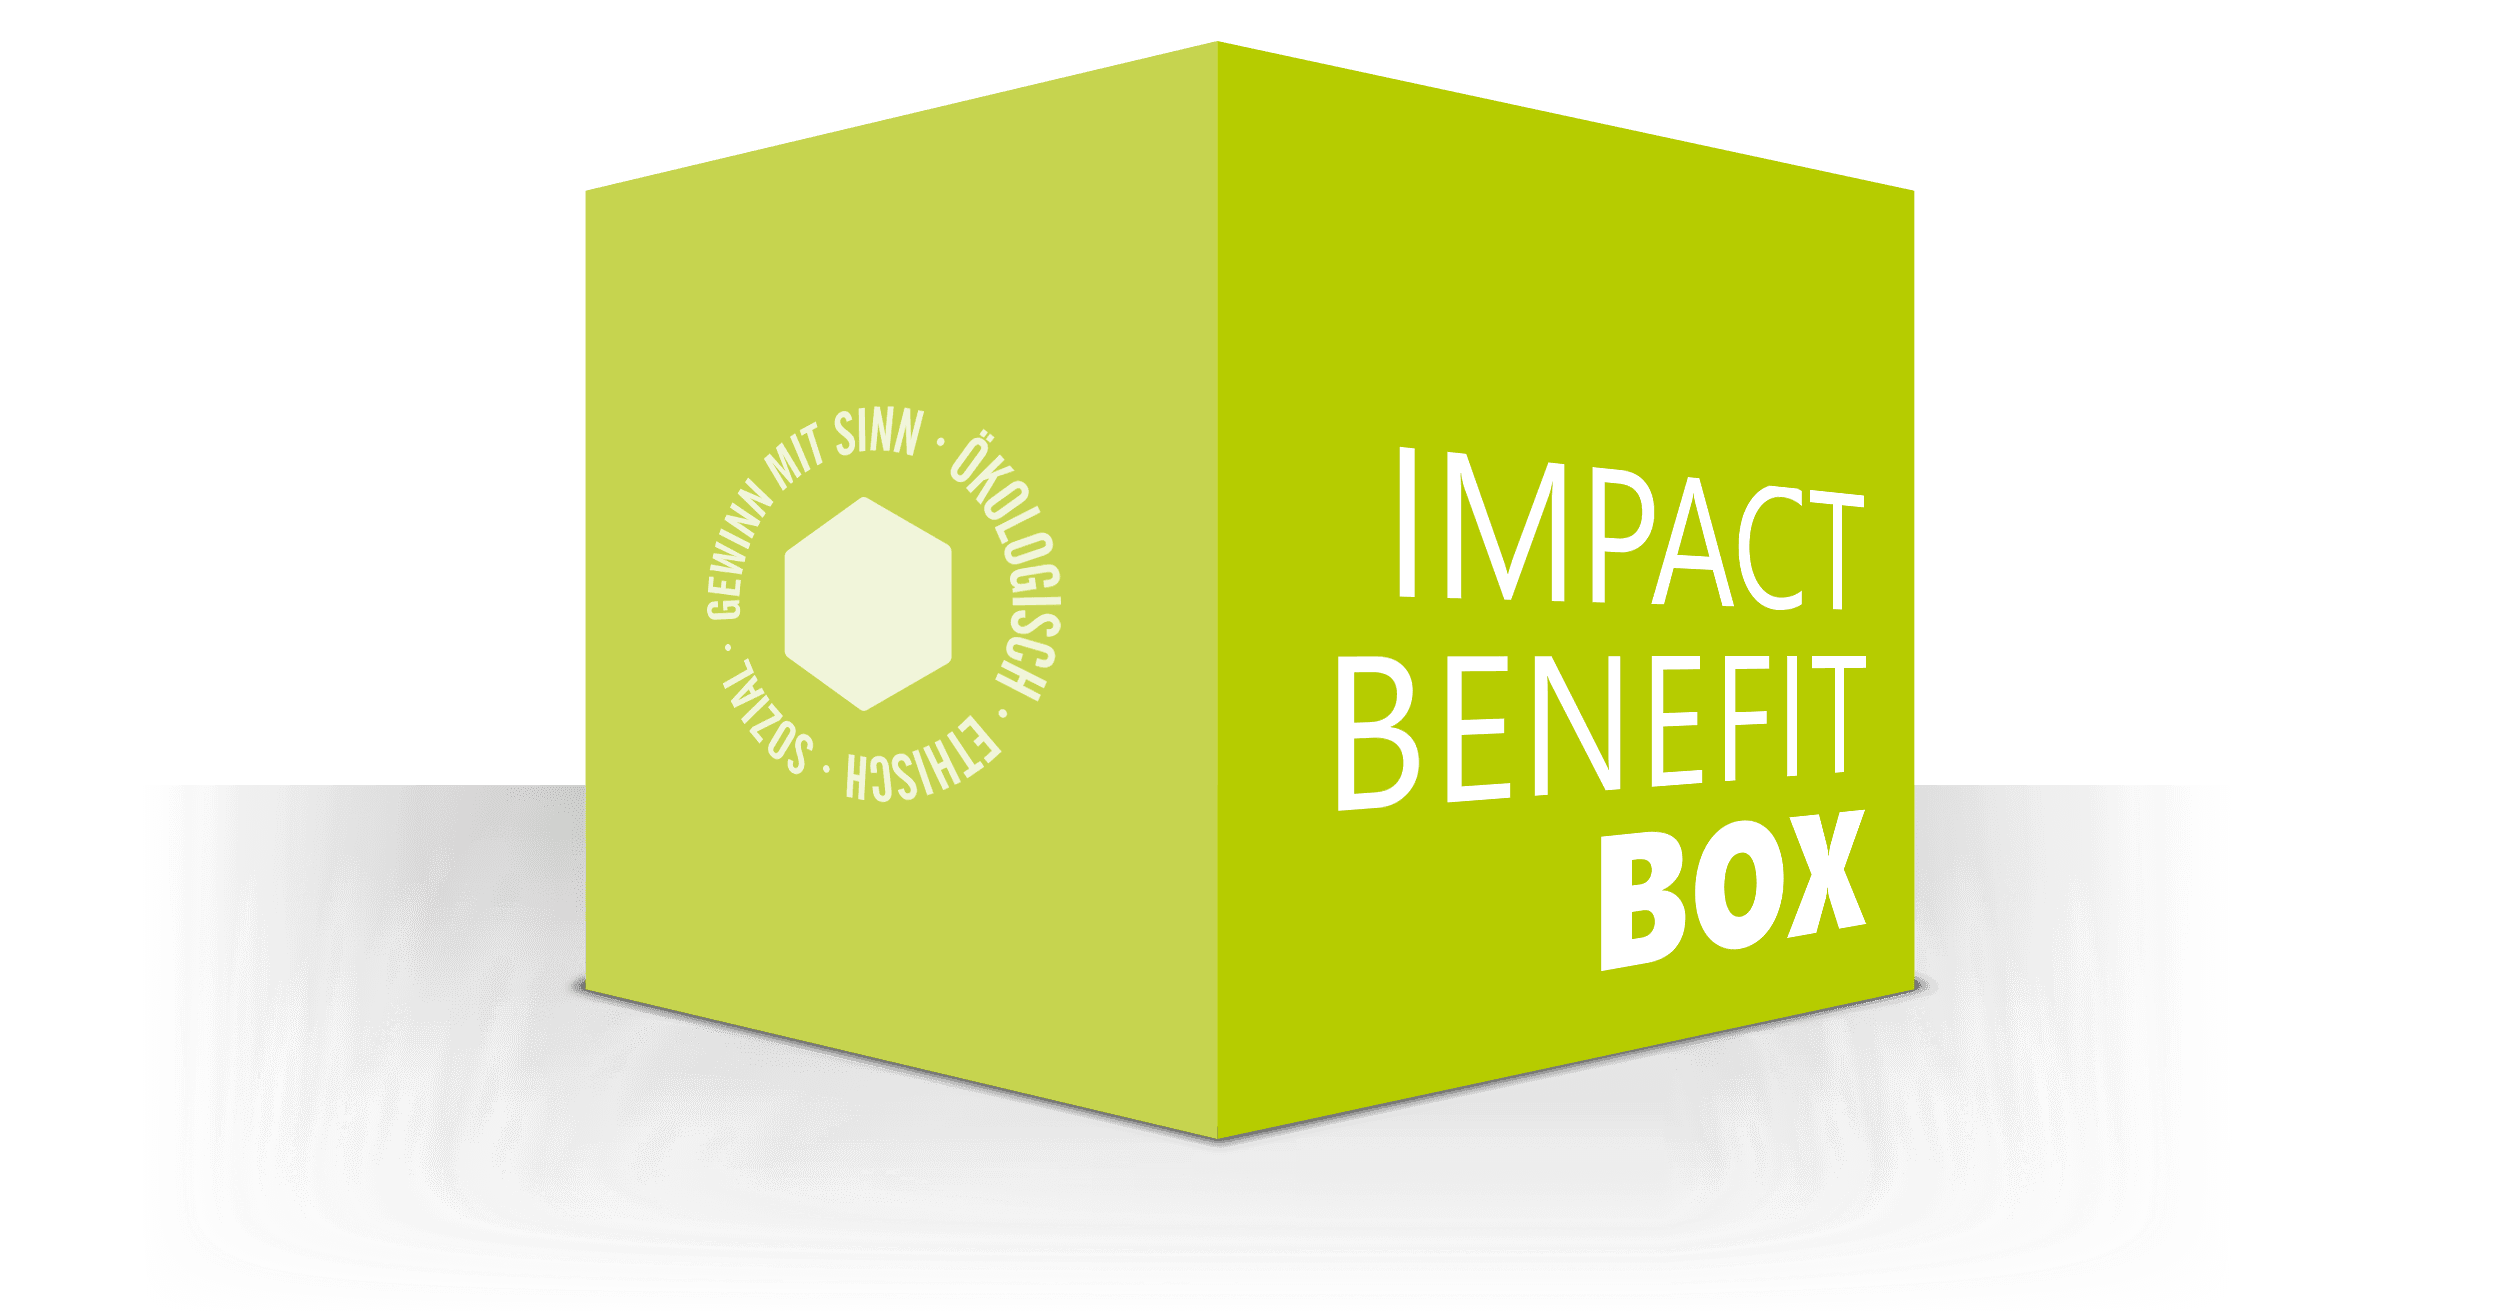 Bild oder Logo des Eintrags Impact Benefit Box